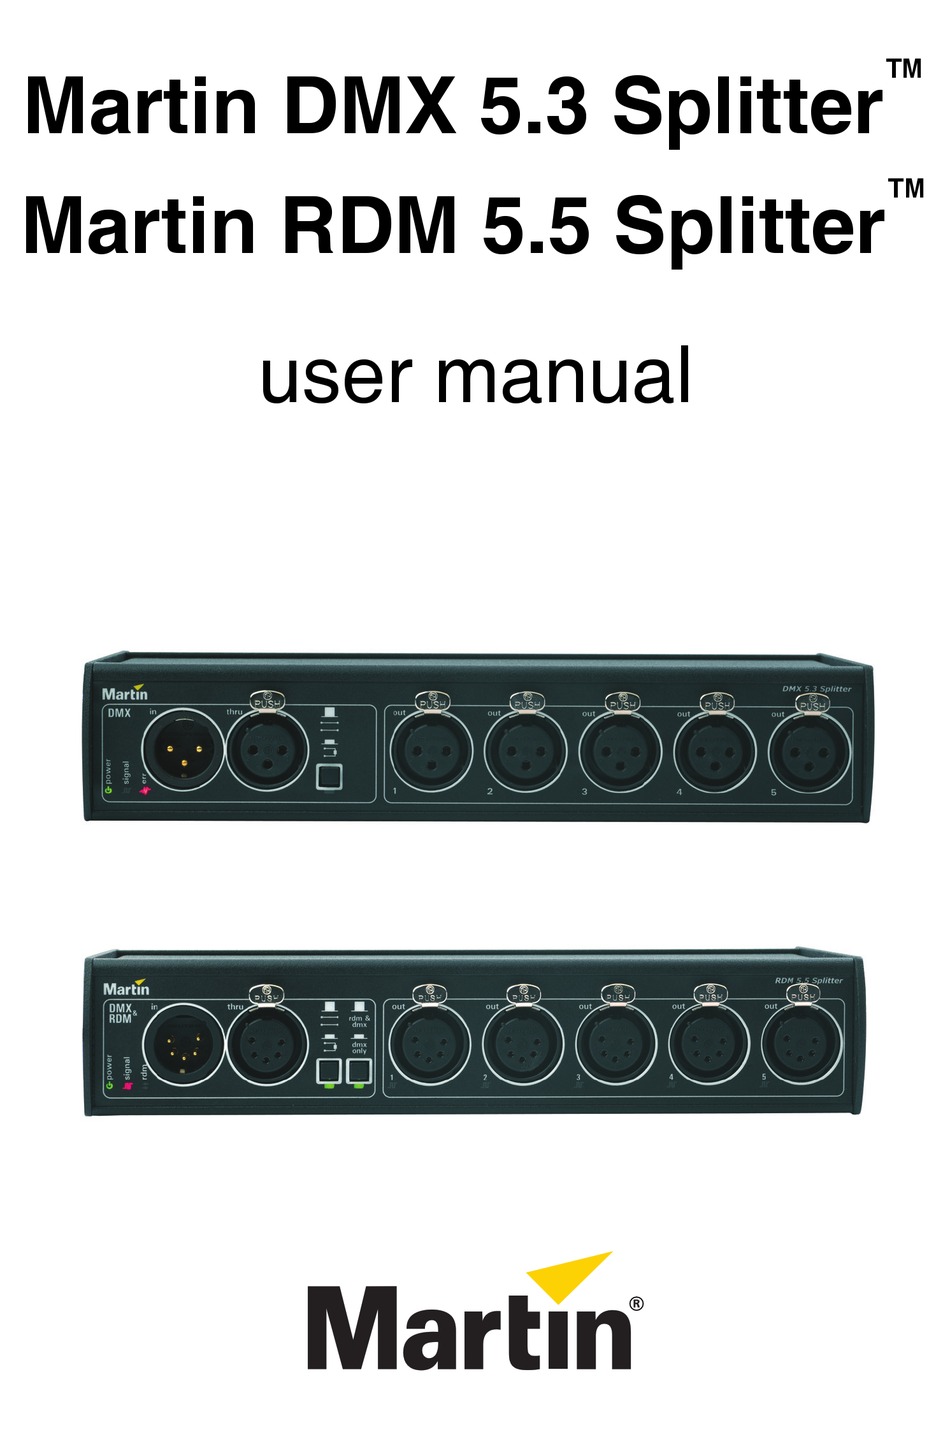 Martin DMX 5.3 Splitter, Martin Lighting